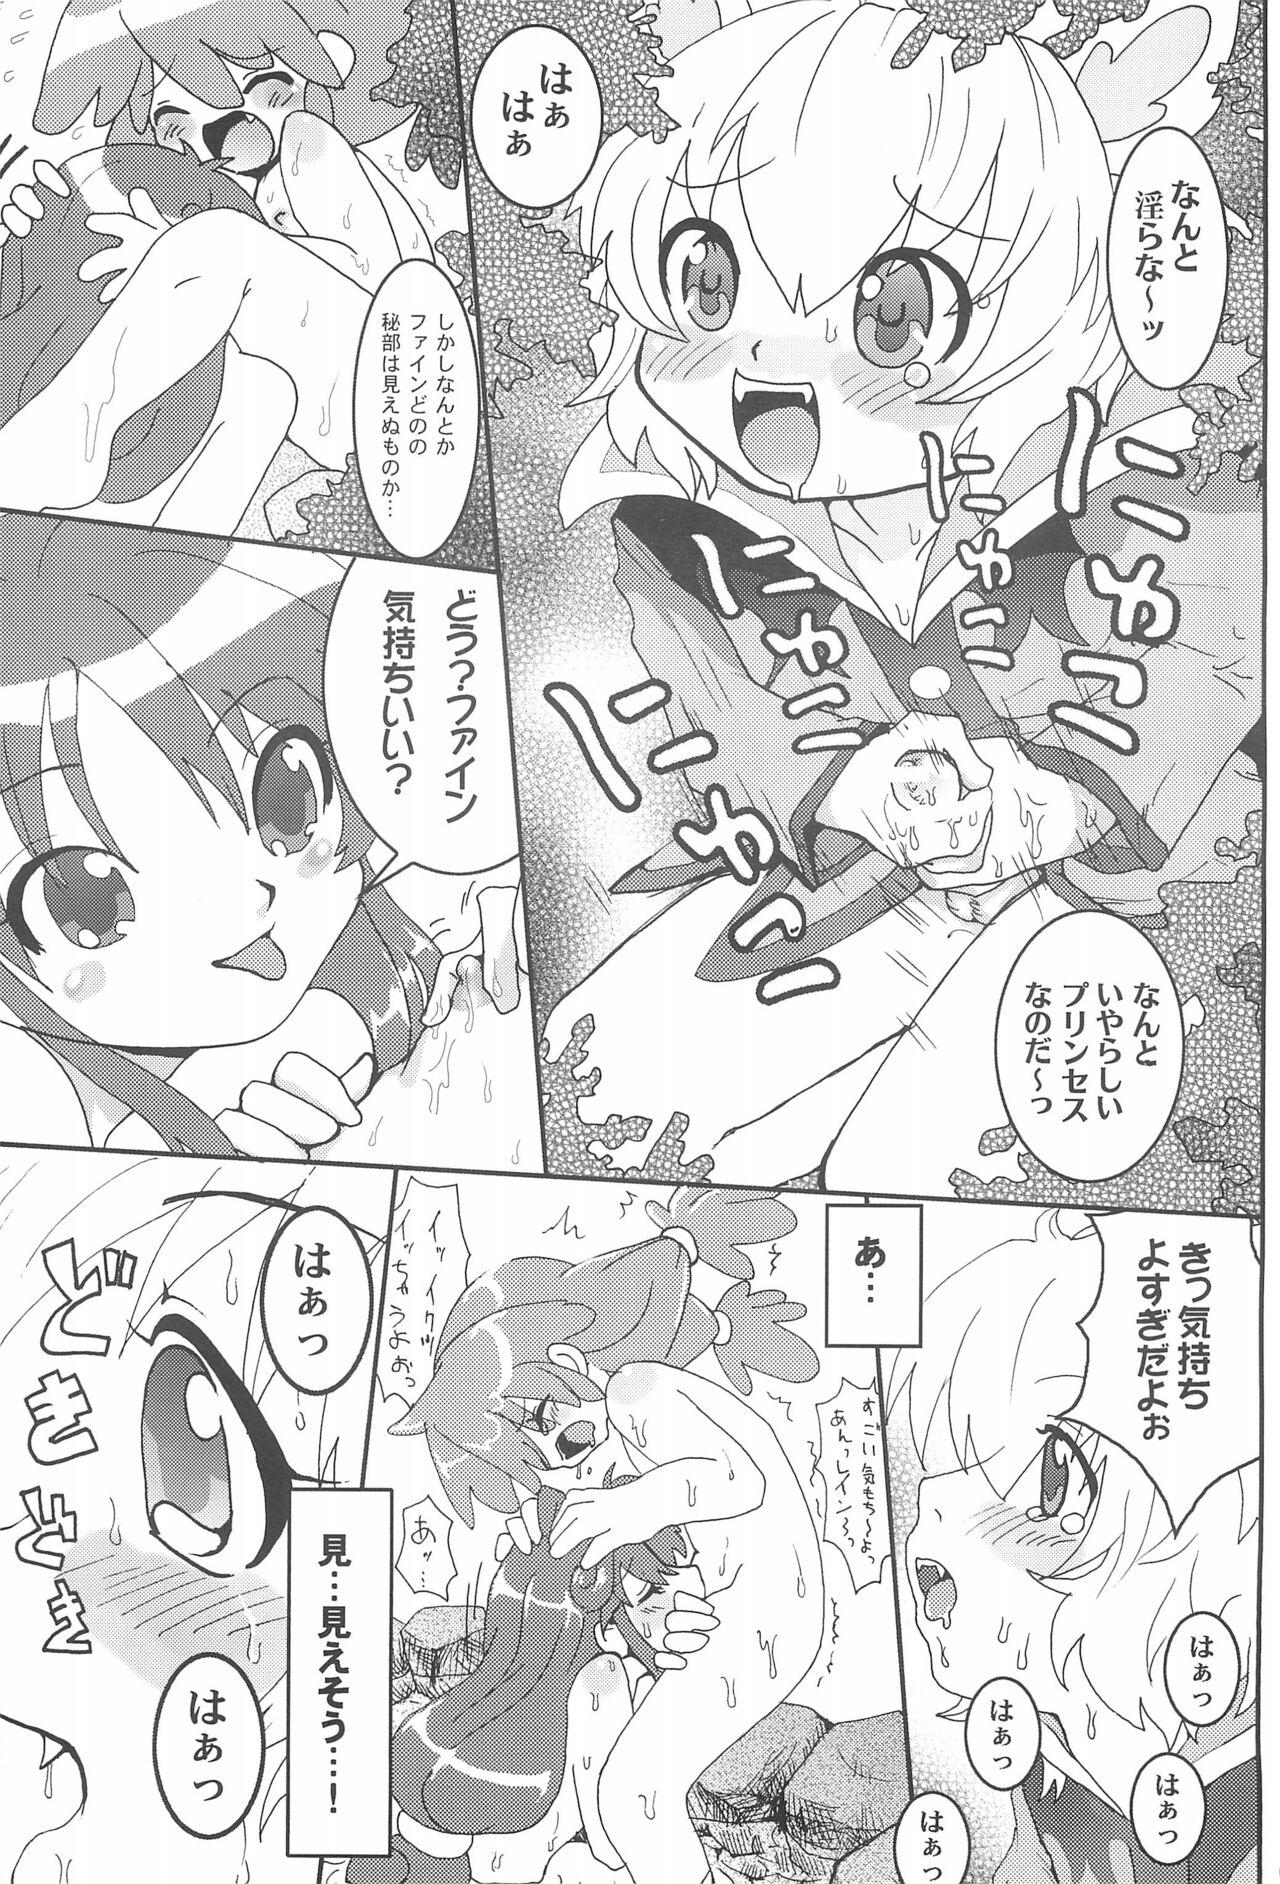 Wet Futanari Twinkle - Fushigiboshi no futagohime | twin princesses of the wonder planet Camgirl - Page 9